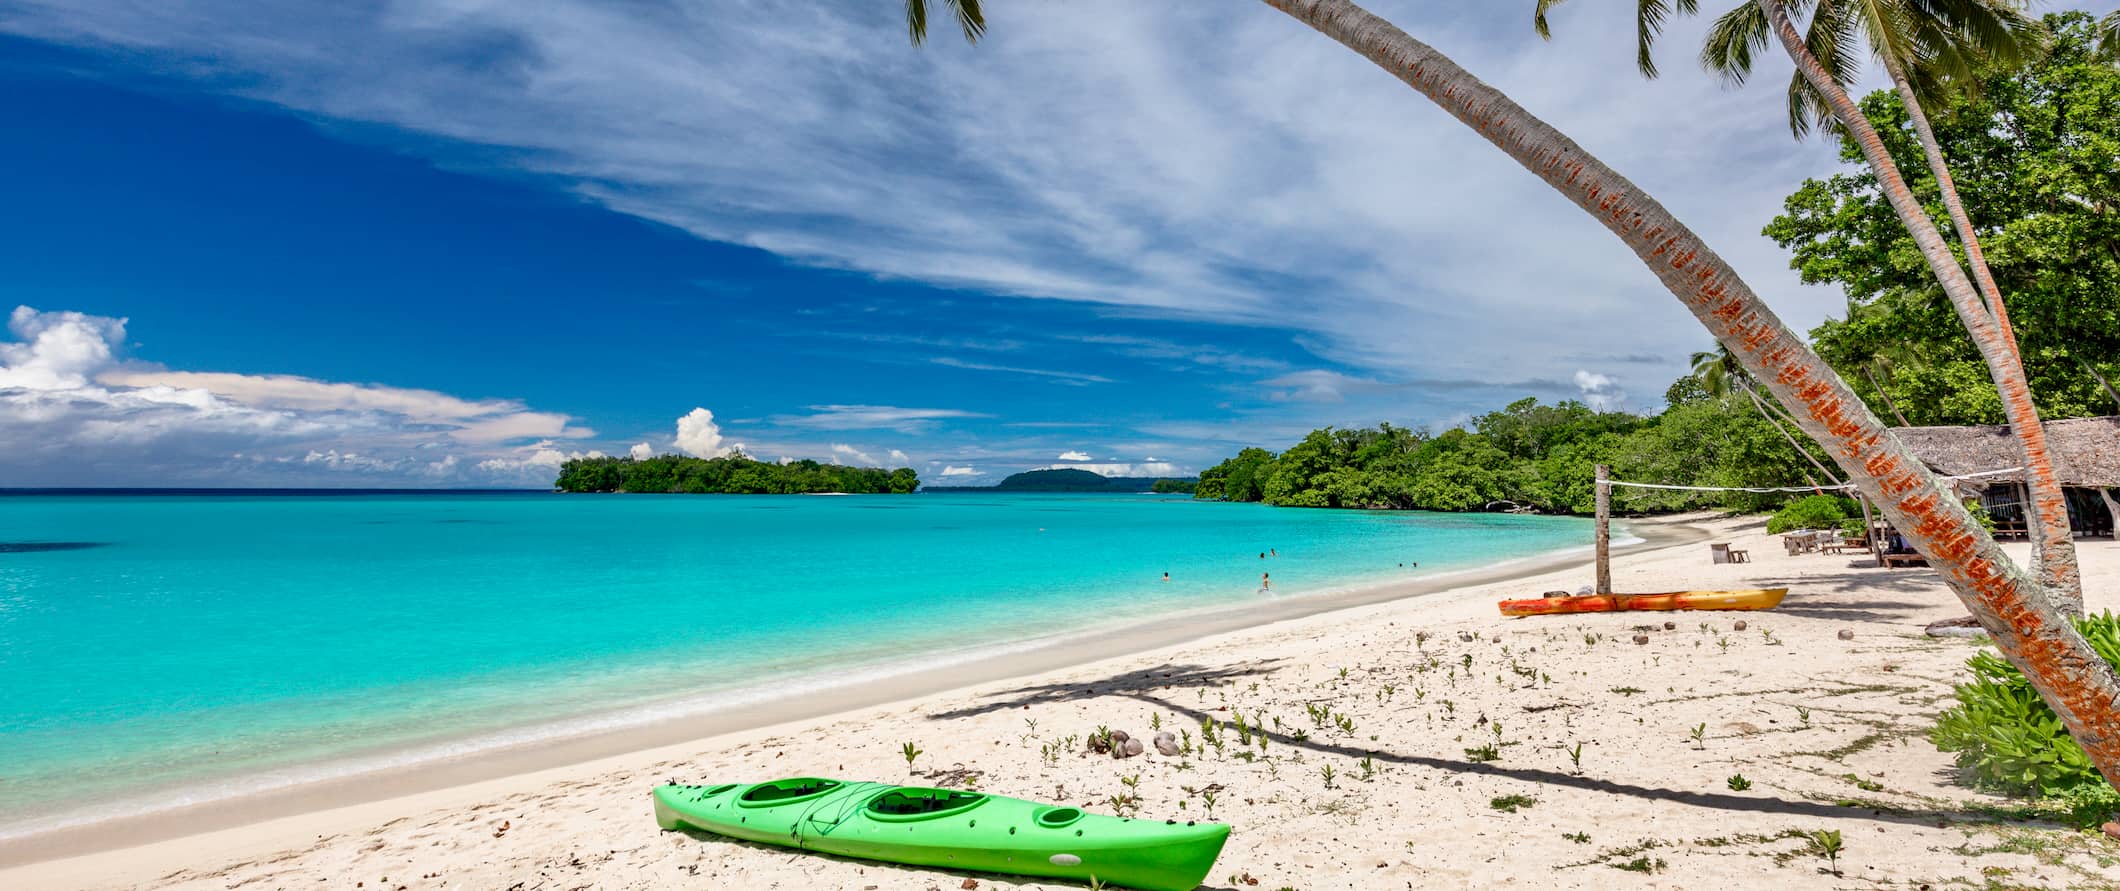 Praia de areia branca em Vanuatu com águas cristalinas e plantas tropicais emoldurando a vista